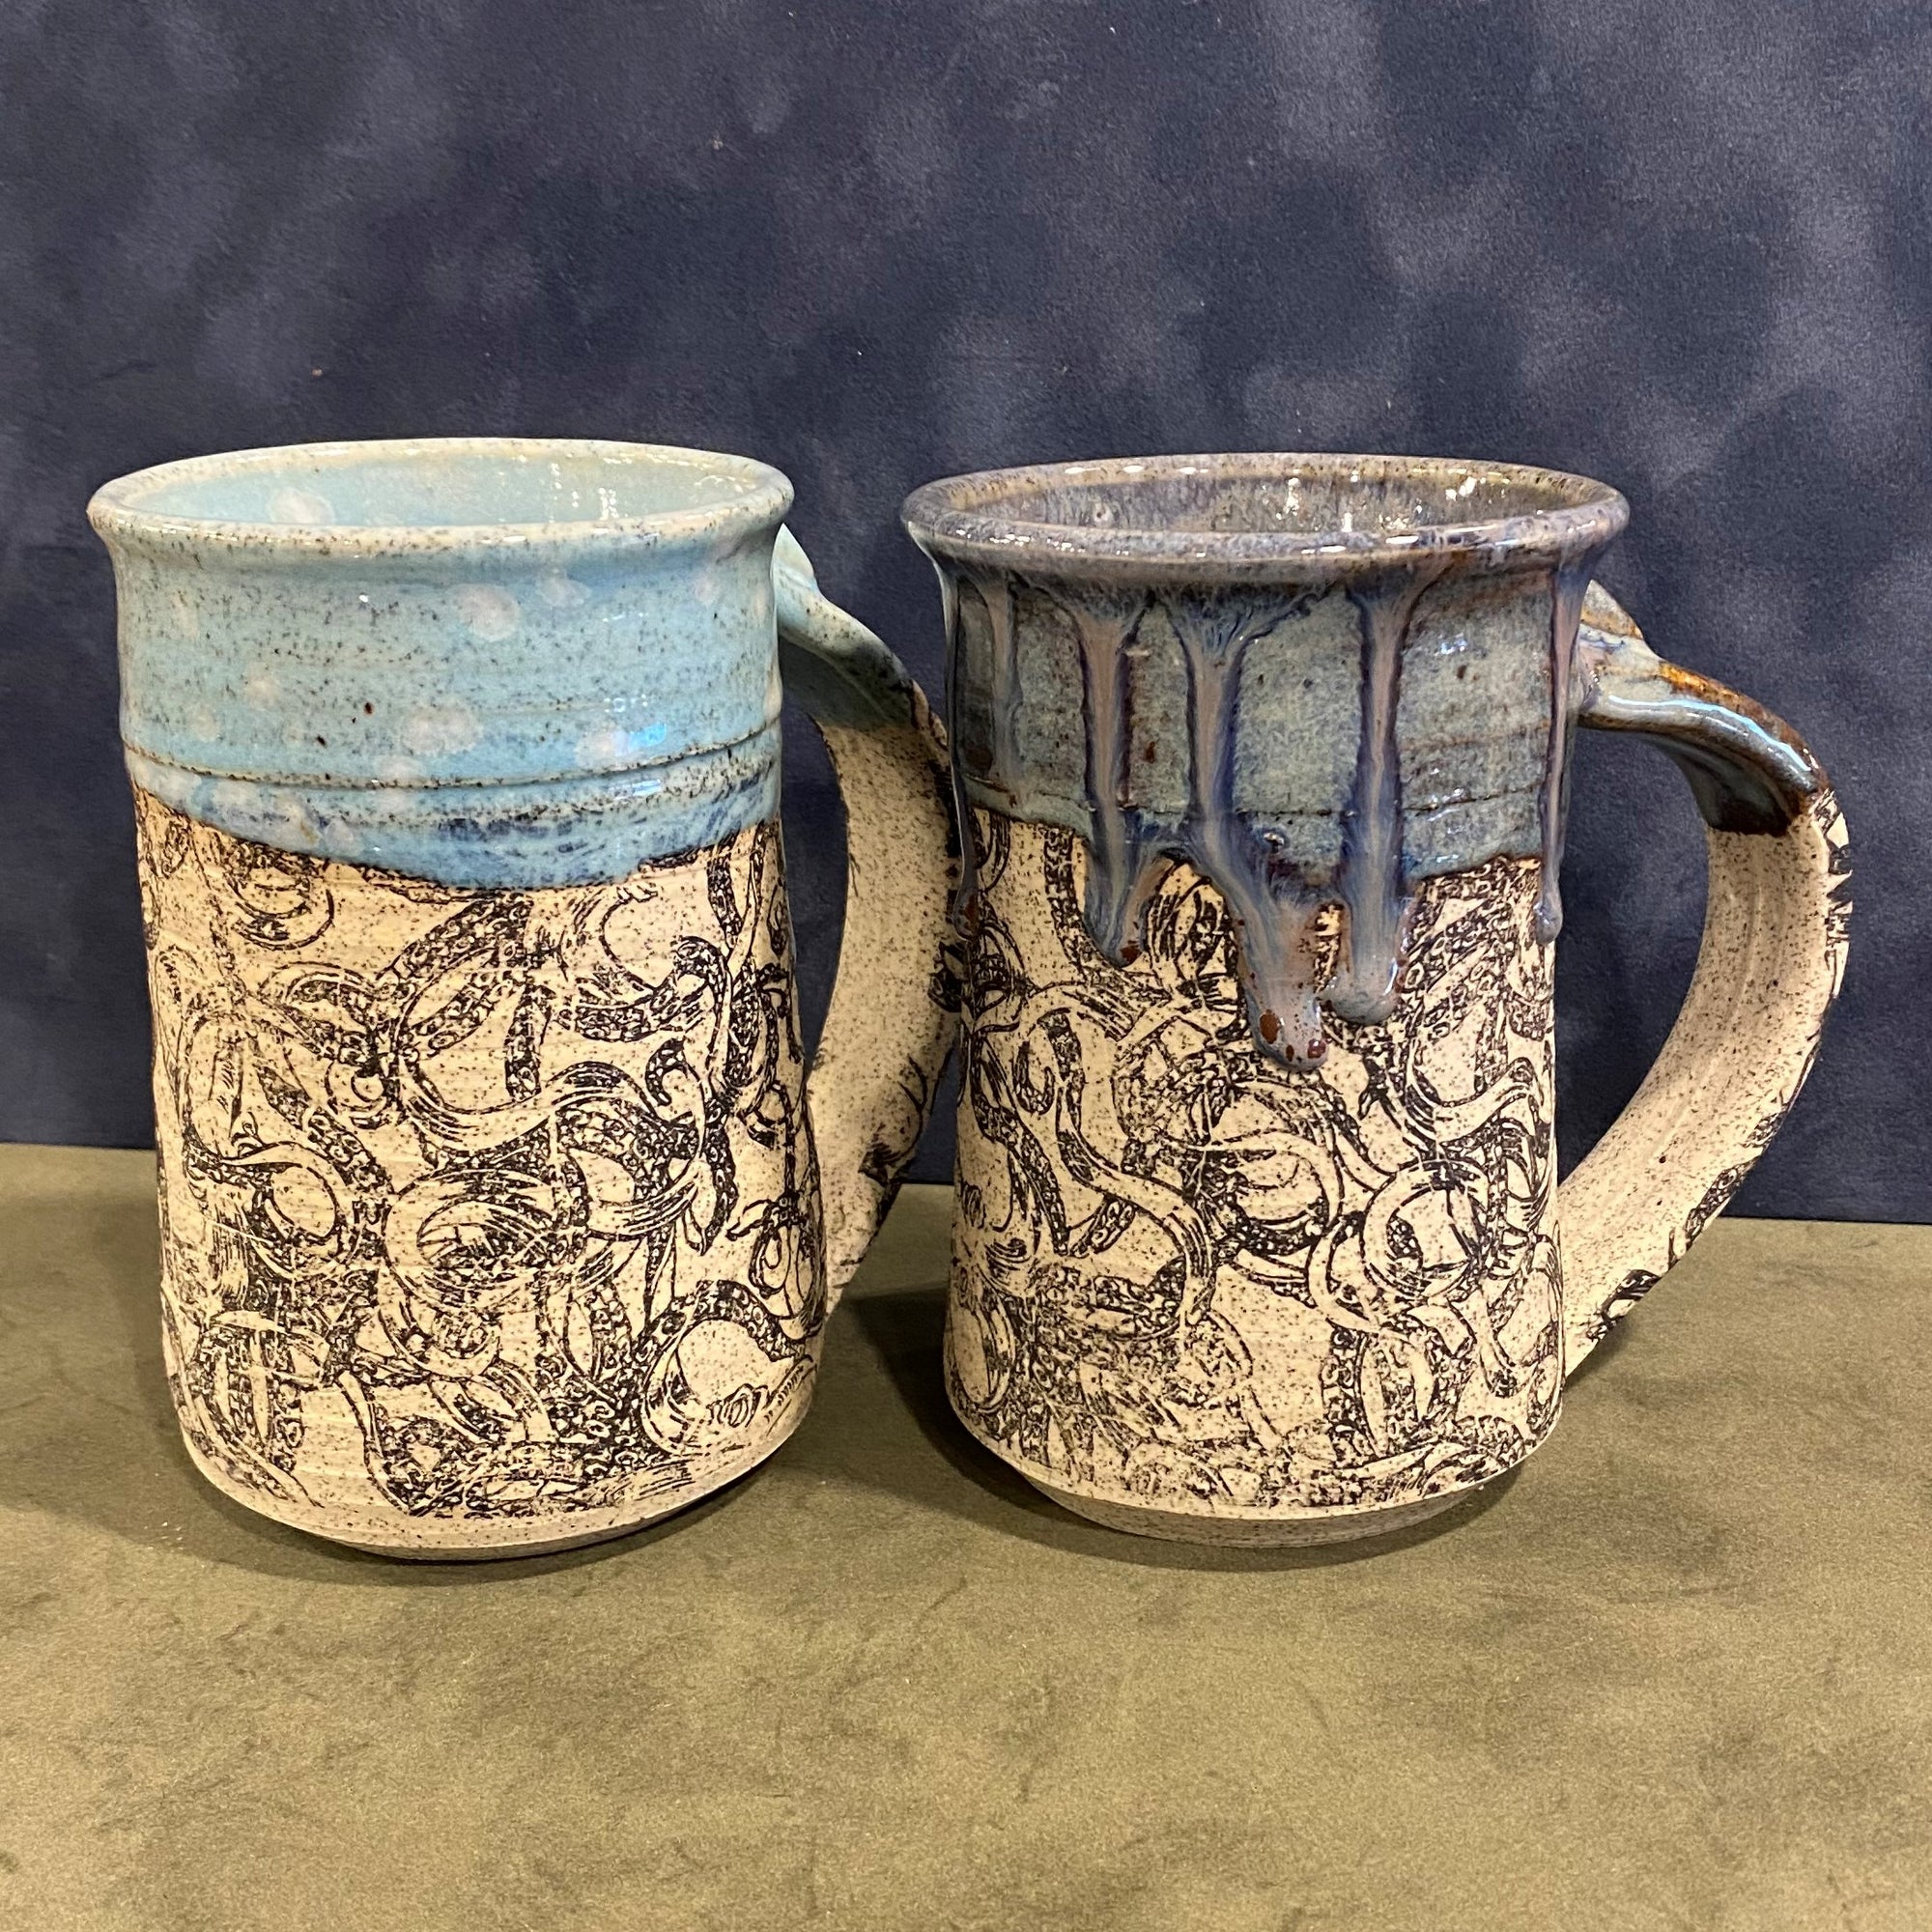 Stoneware Pottery Decal Mugs